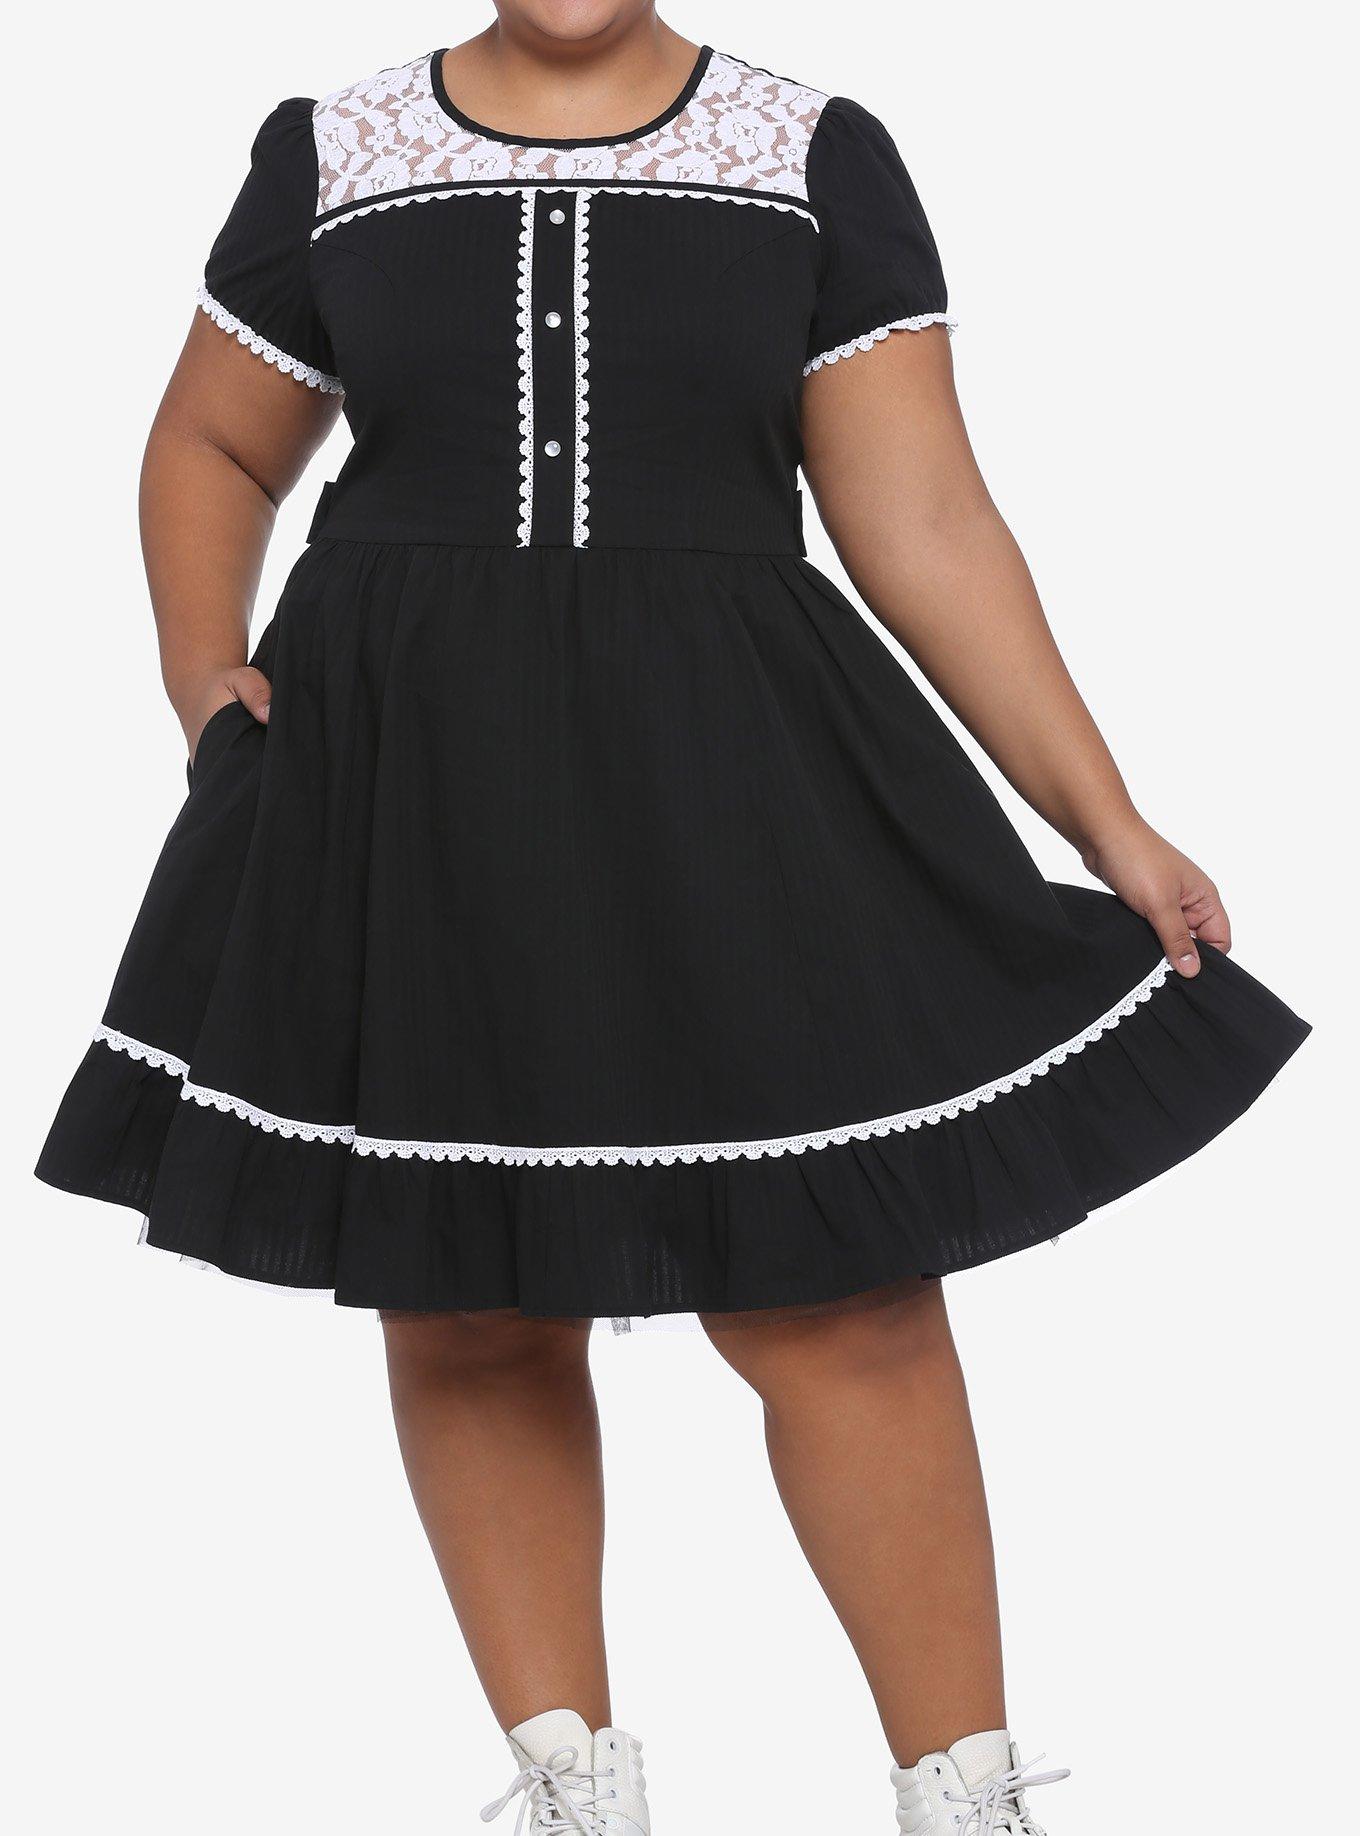 Black & White Lace Panel Dress Plus Size, BLACK, hi-res